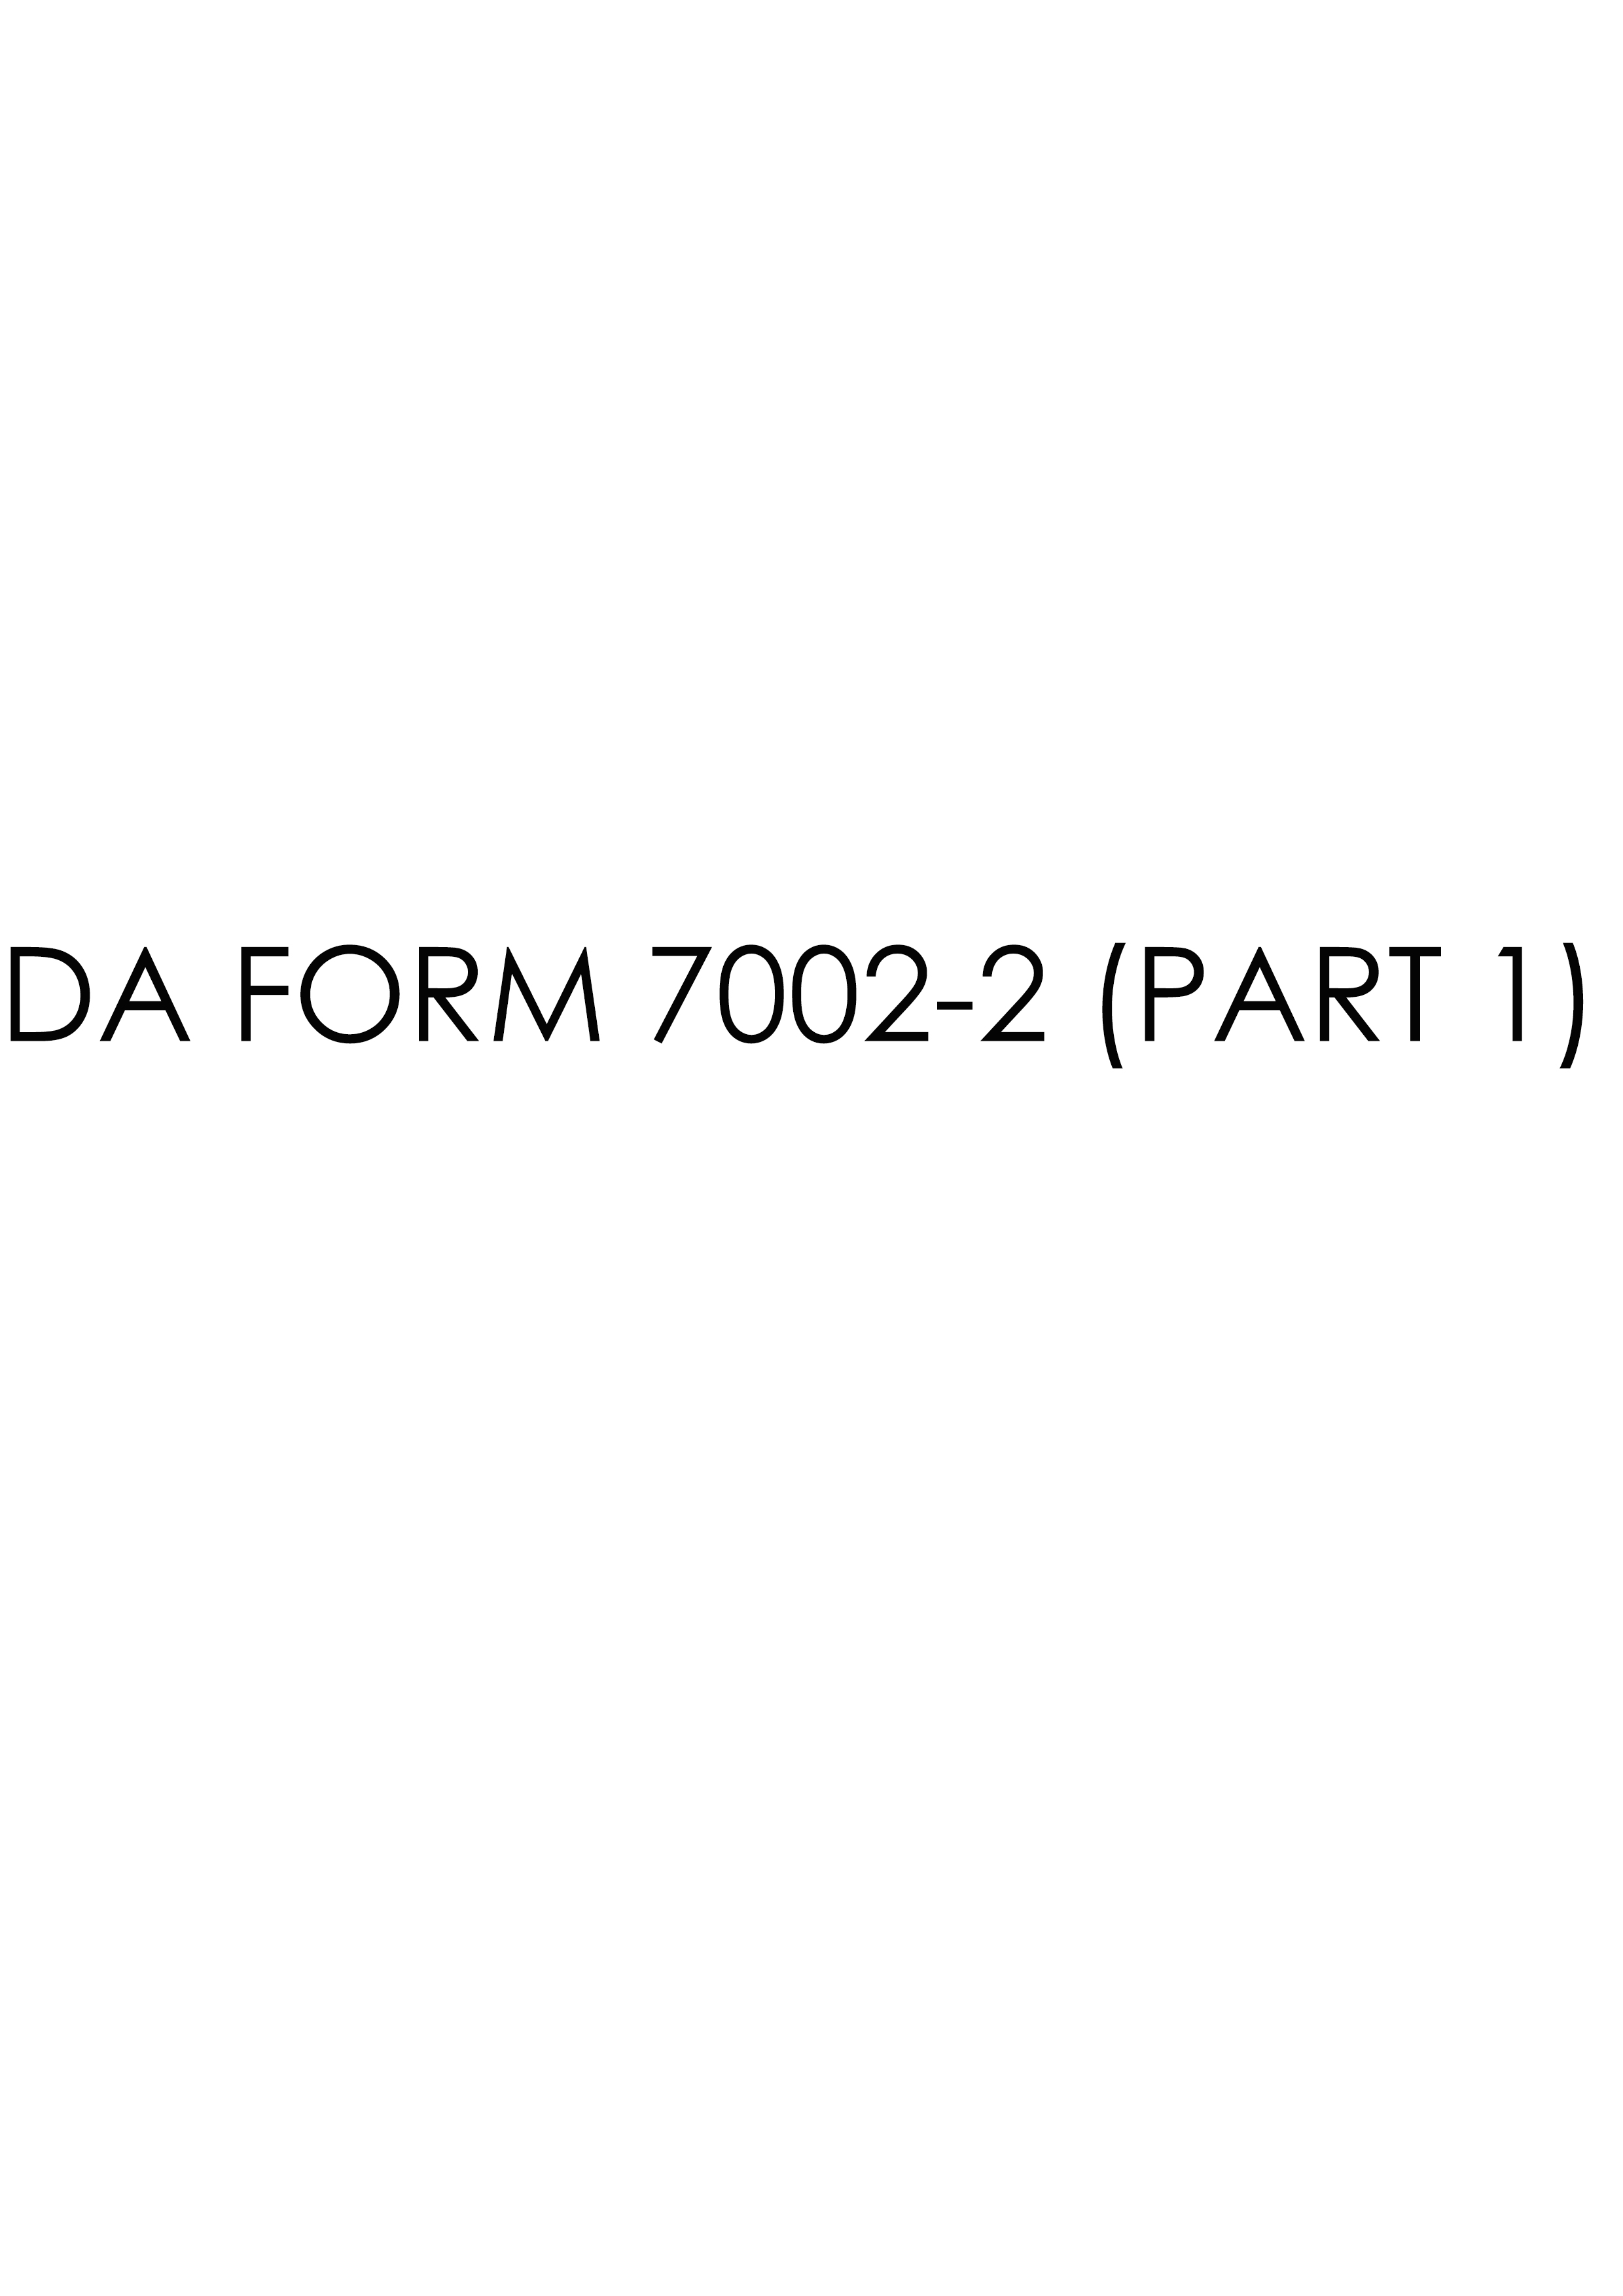 da Form 7002-2 (PART 1) fillable